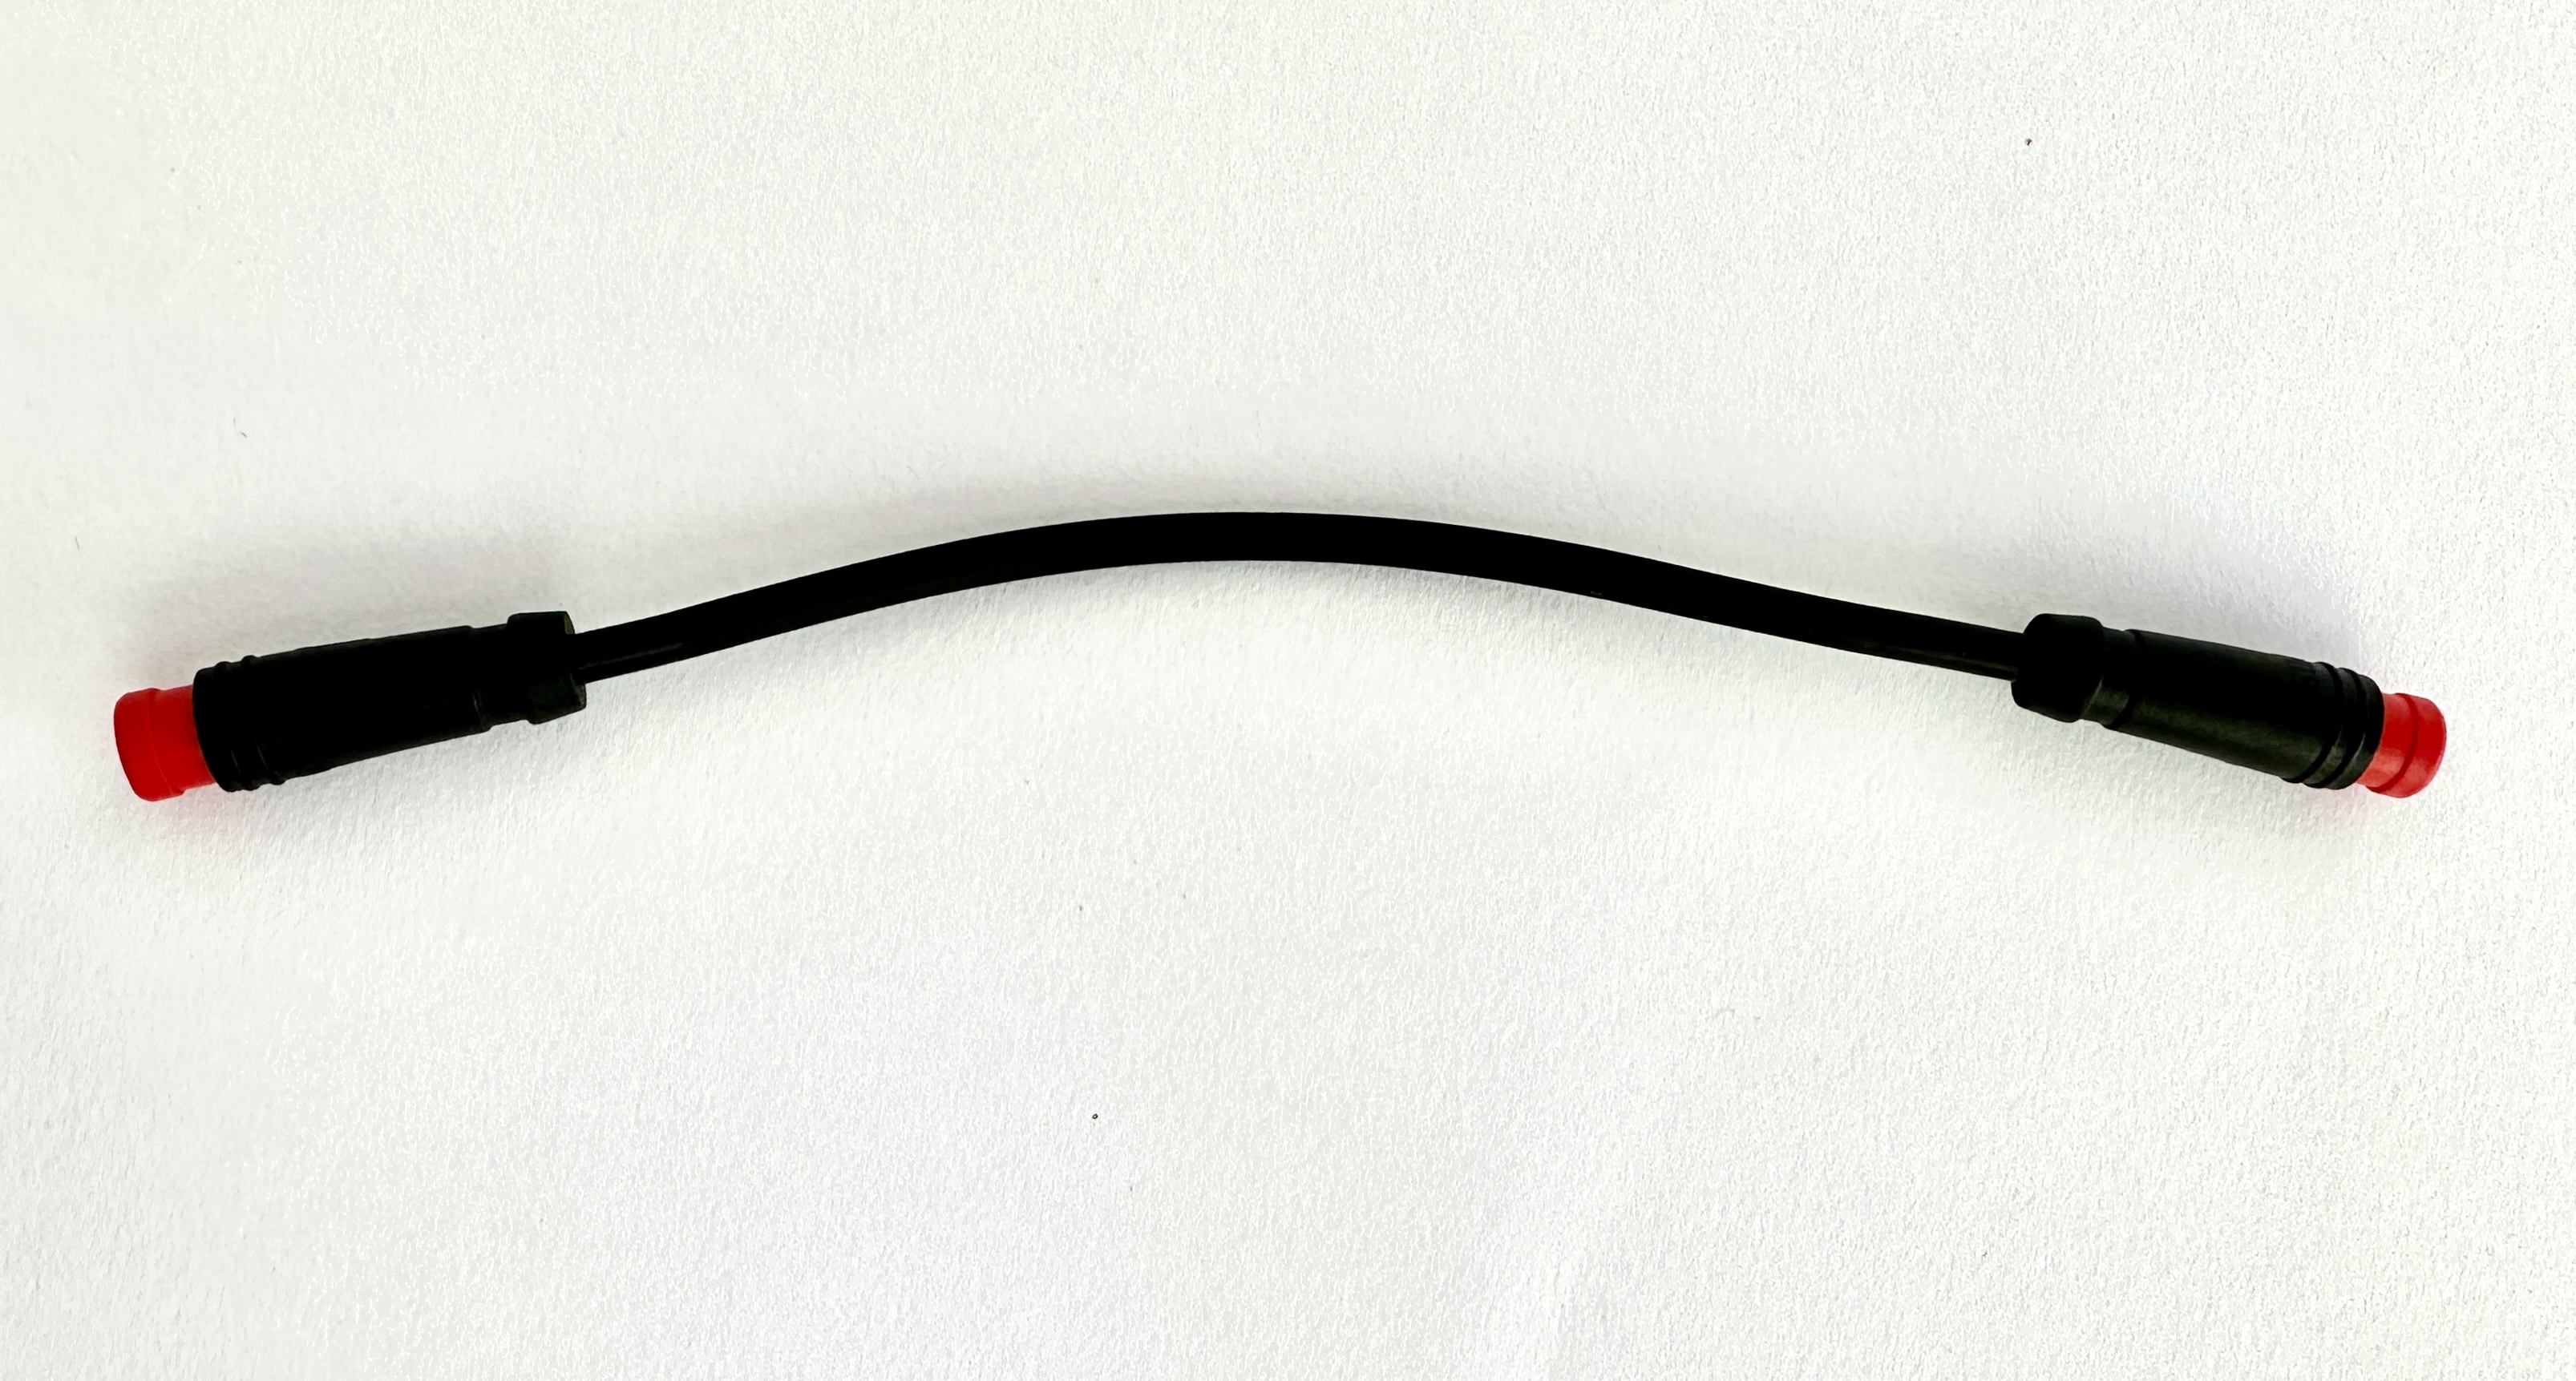 HIGO / Julet Câble adaptateur 11 cm pour Ebike, 2 PIN mâle à mâle, rouge